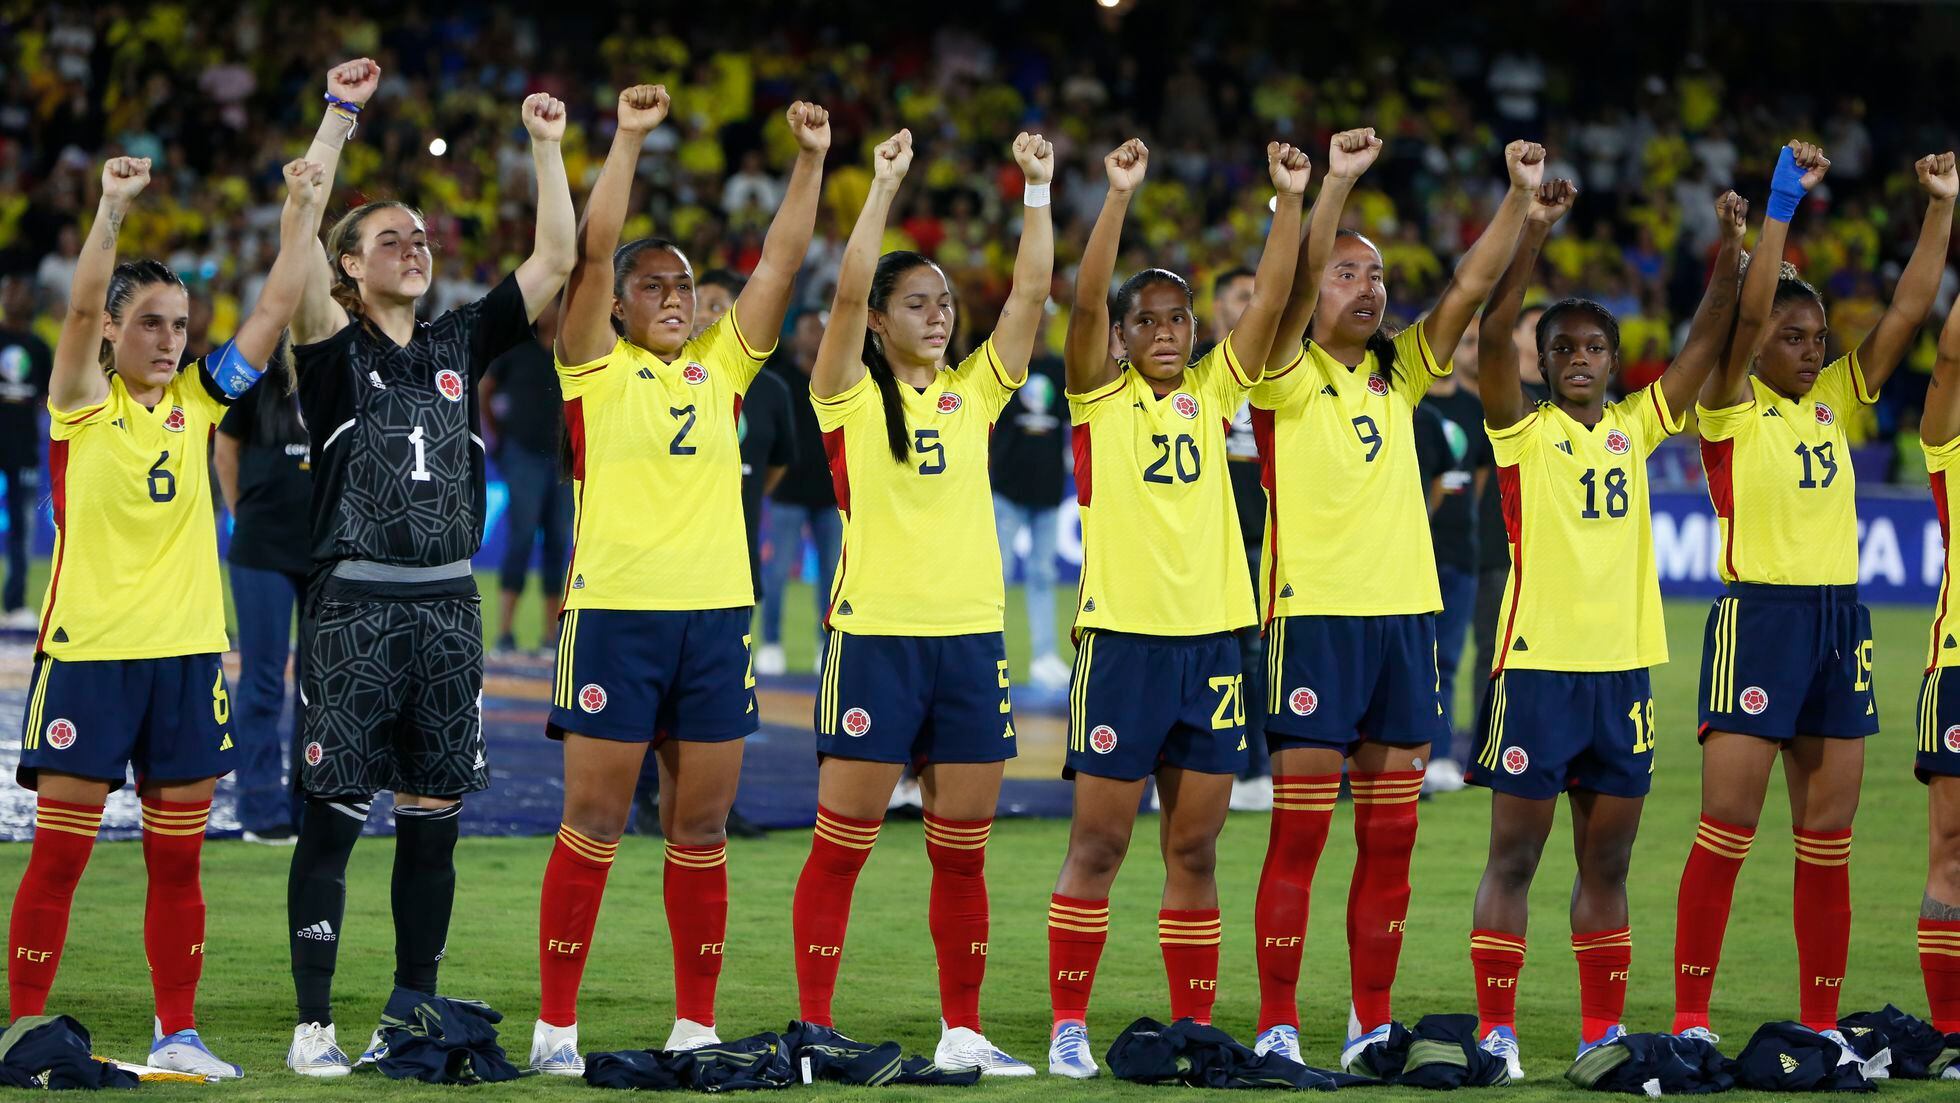 La lucha de las futbolistas colombianas por la igualdad | EL PAÍS América  Colombia